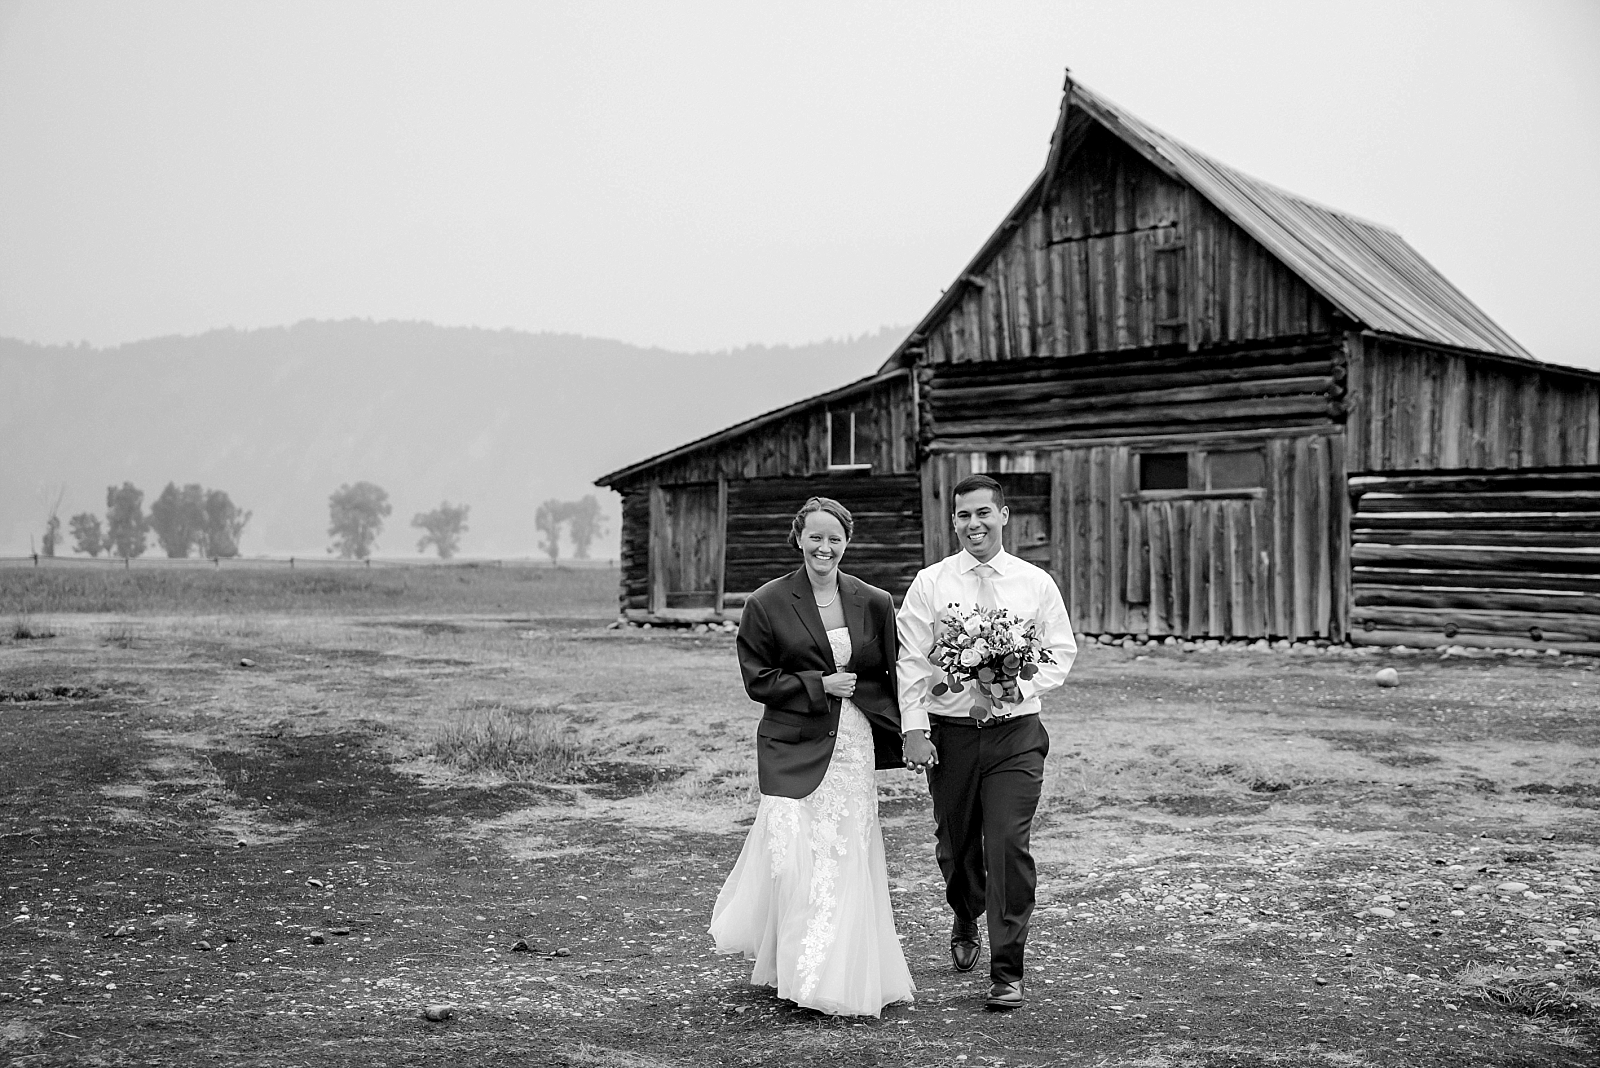 wedding portraits in the tetons Jackson Hole wedding photography timeline